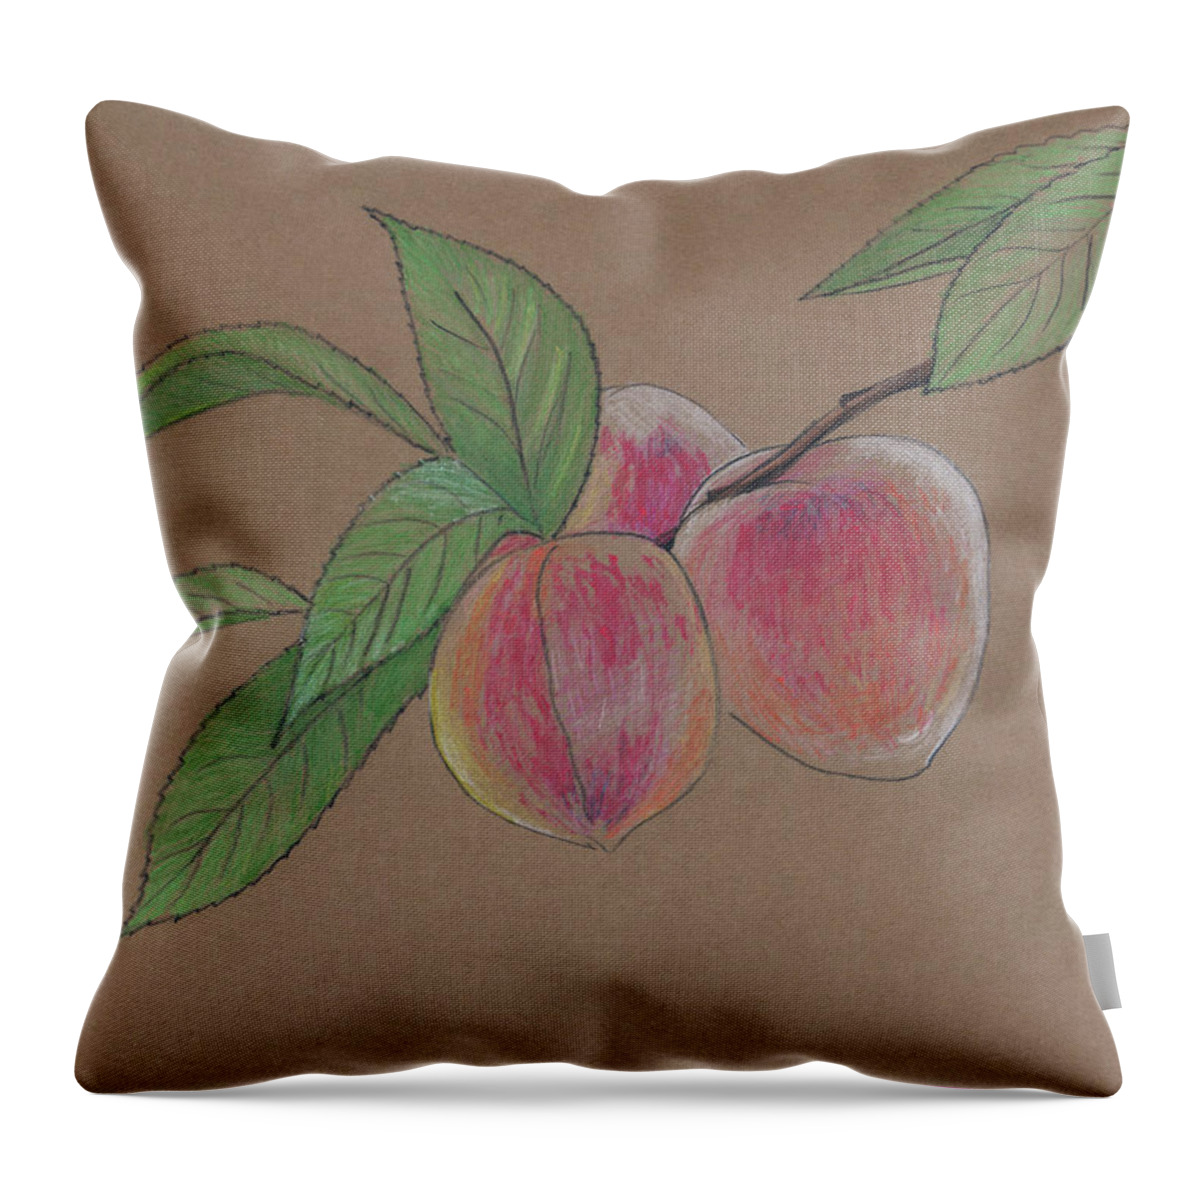 Peach Throw Pillow featuring the painting Peach Branch by Masha Batkova